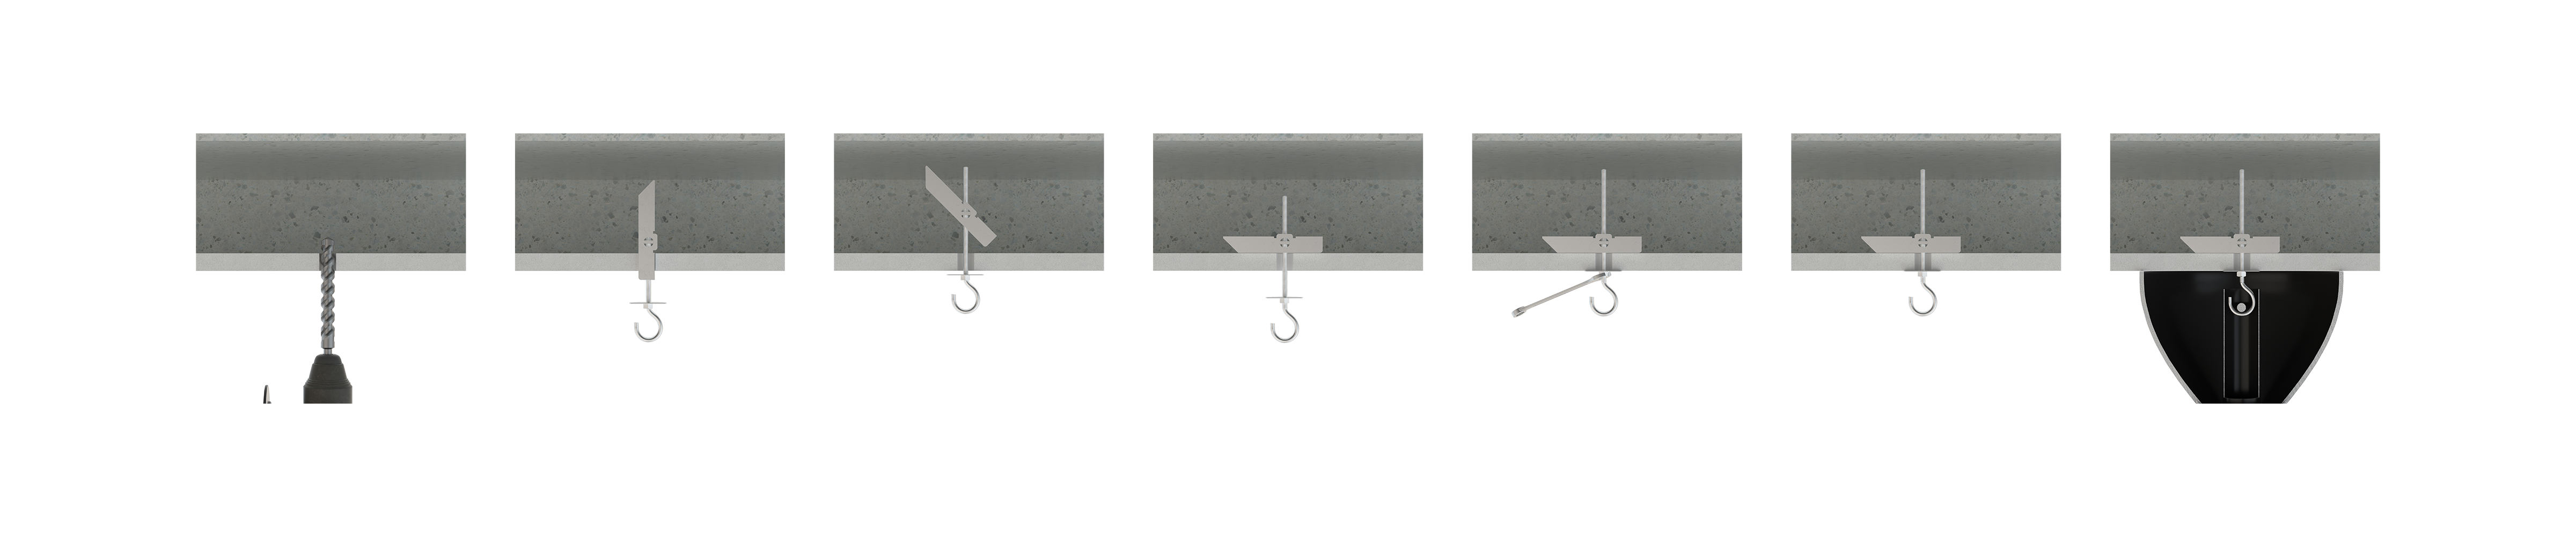 Instrucciones de instalación - BA-GA - Basculantes por gravedad para la fijación de elementos ligeros en falsos techos. 